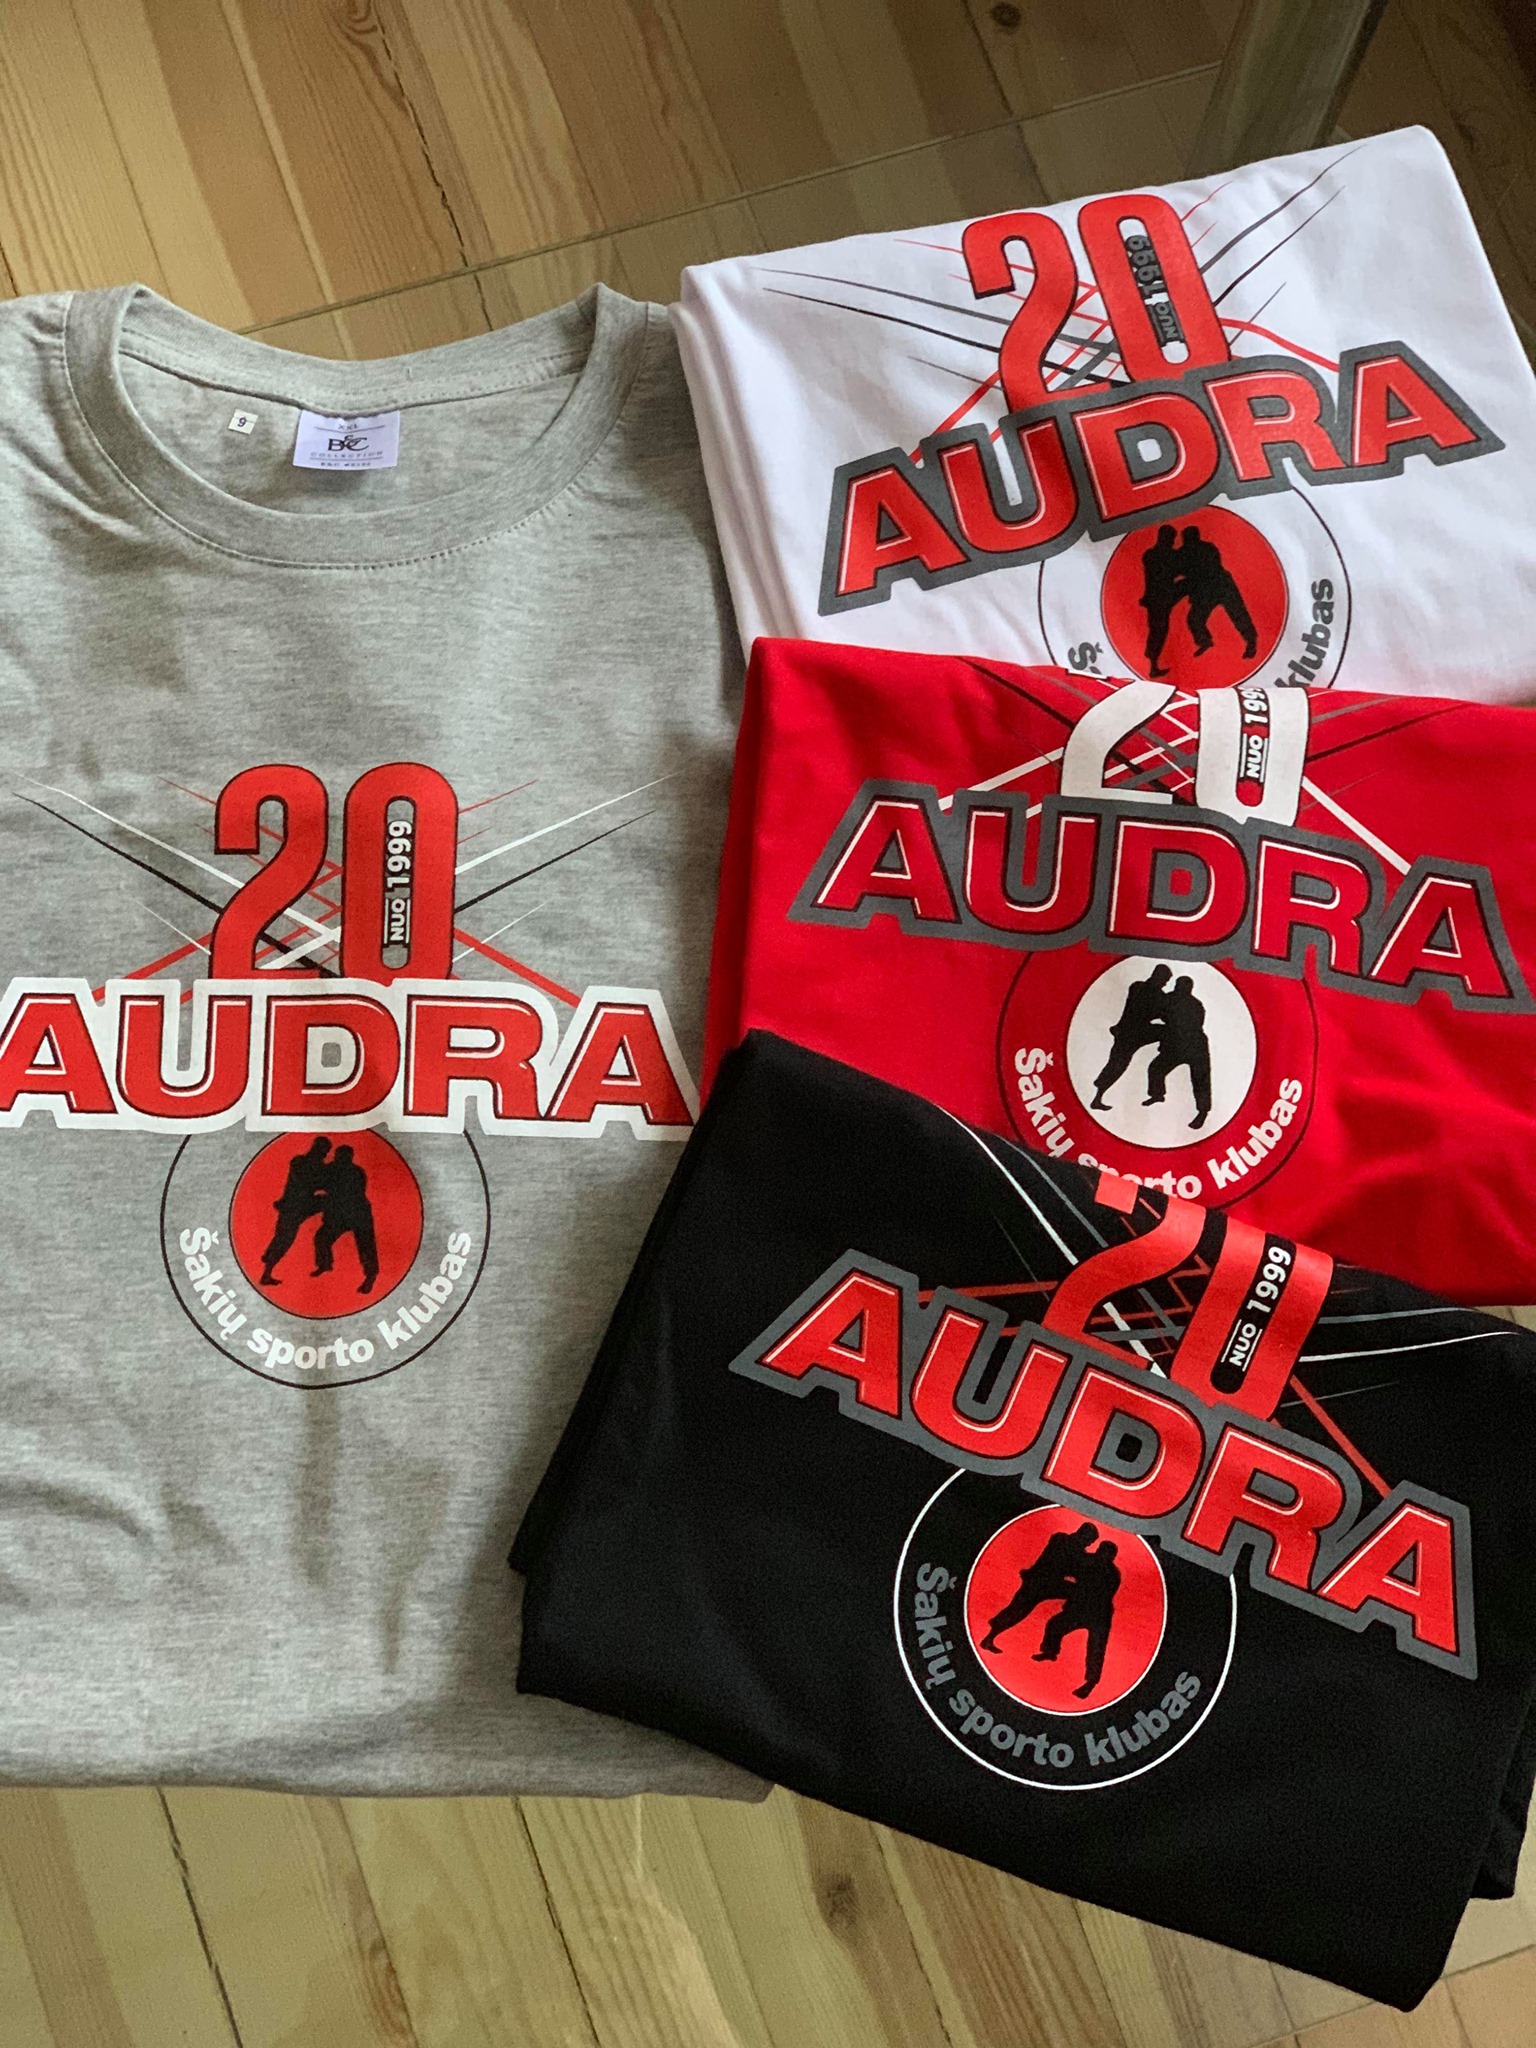 Naujieji sporto klubo „Audra“ marškinėliai jau vietoje!!!